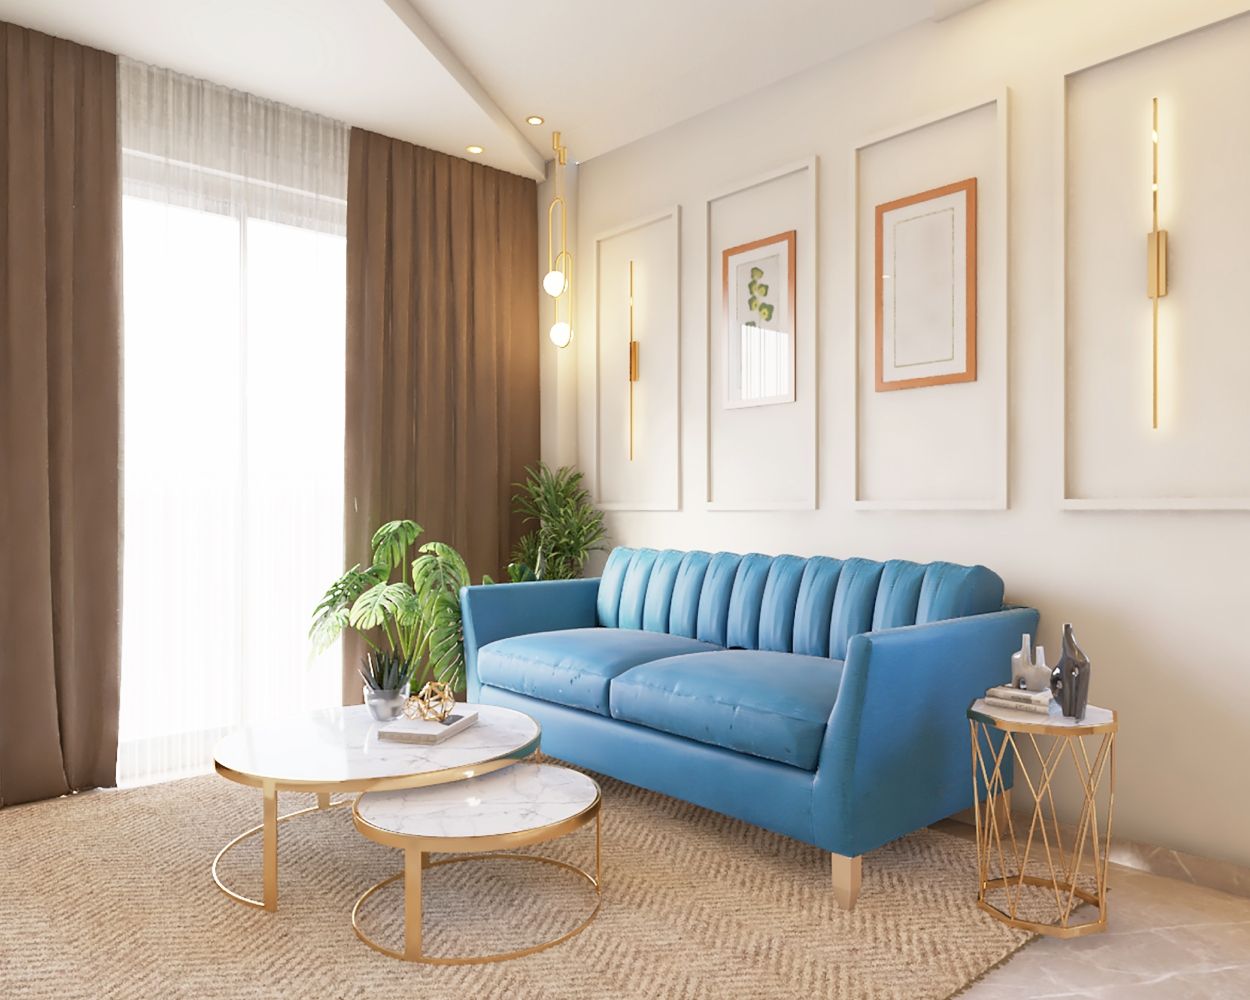 Contemporary Living Room Design With Bright Blue Track Arm Sofa